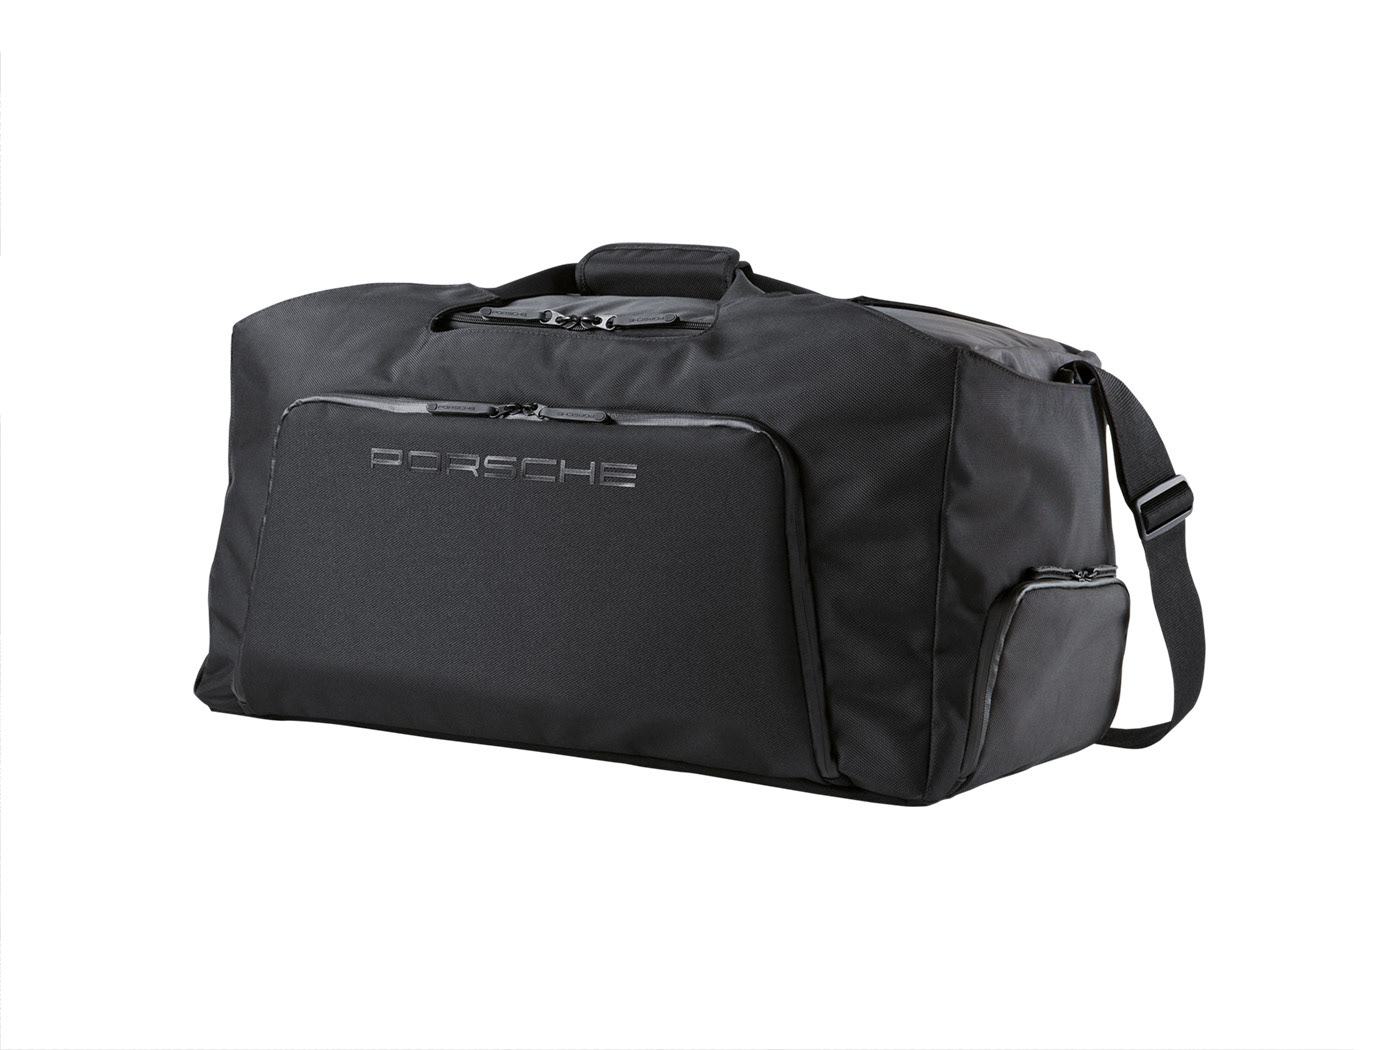 apparel soft goods Porsche sports luggage luggage rkellenberger tennis bag Travel bag sports bags backpack Waist bag Belt Bag nylon Rucksack